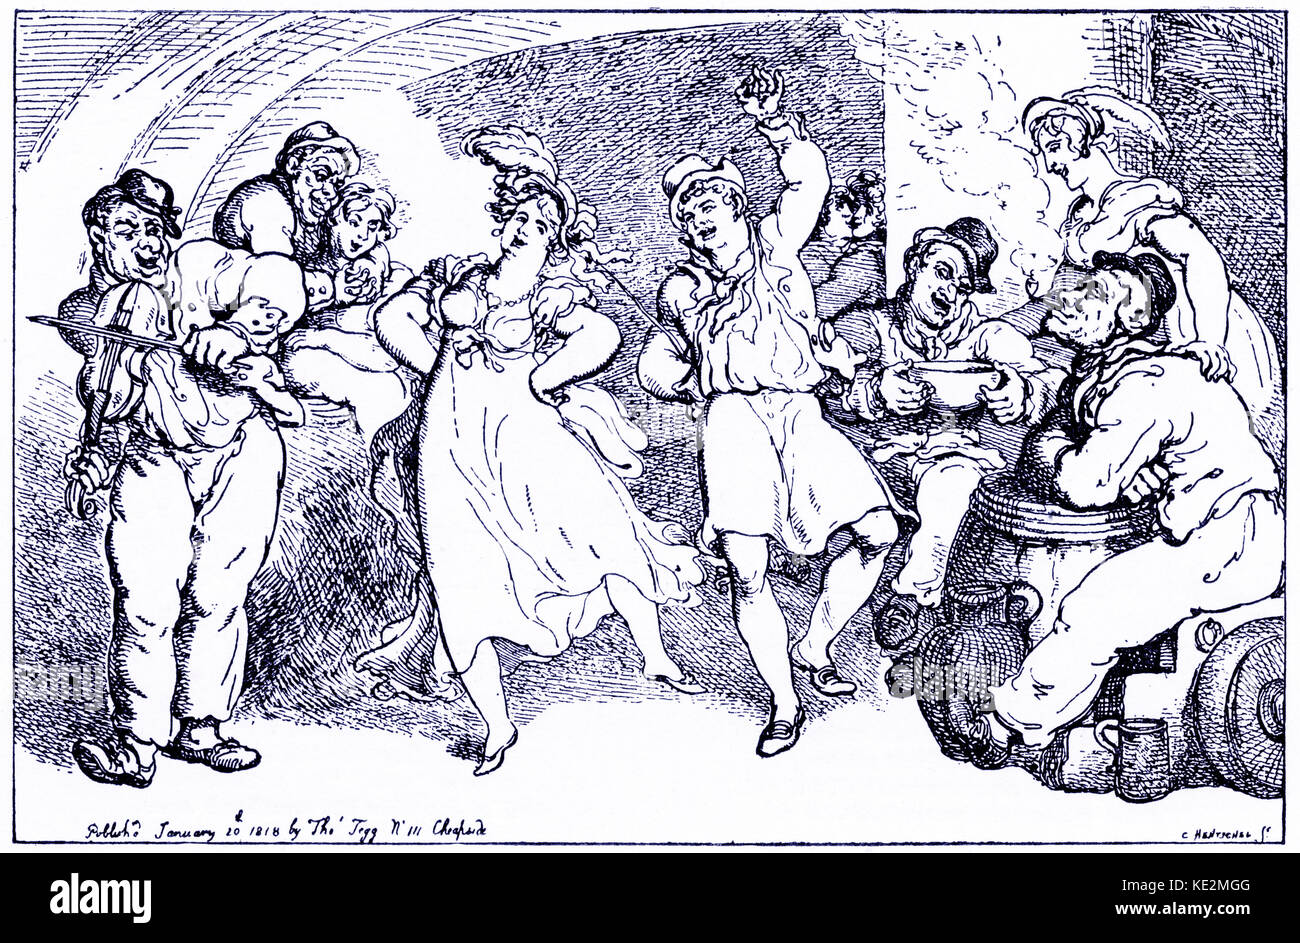 Der letzte Aufsatz oder Adieu nach England. 20. Januar 1818. Von Thomas Rowlandson, Englischer Illustrator, 1756-1827. Paartänze wie andere zuschauen, wie Essen, Trinken, Rauchen. Stockfoto